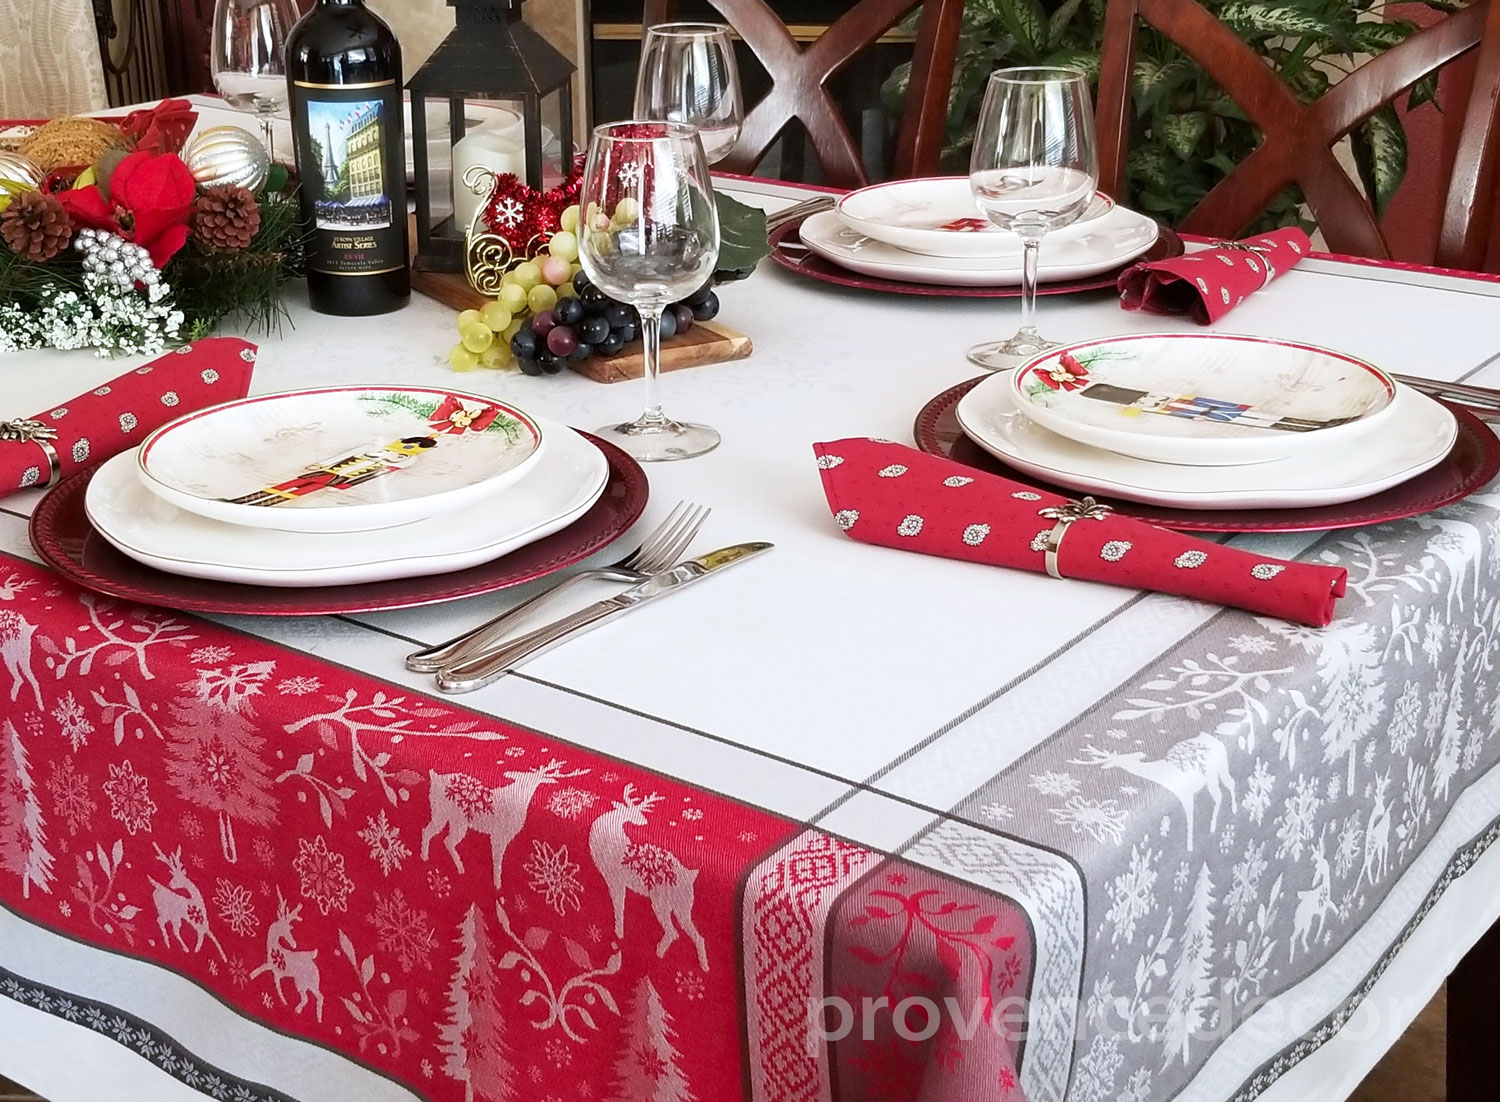 Sur la Table Merry Christmas Jacquard Kitchen Towel